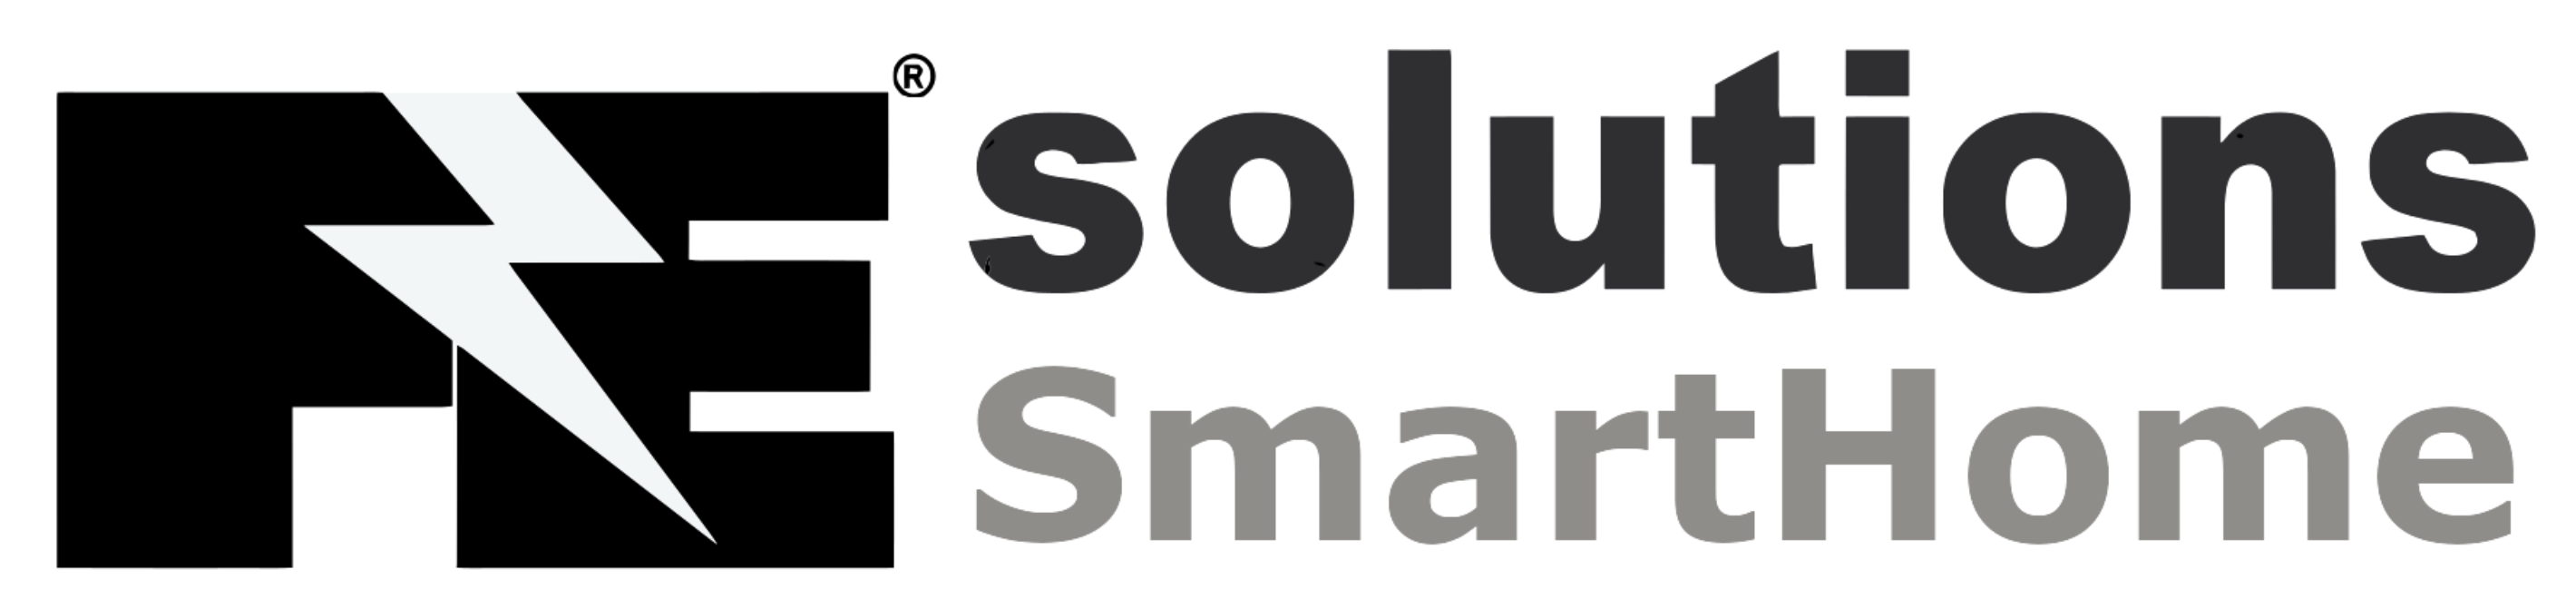 Fe Solutions Company Logo